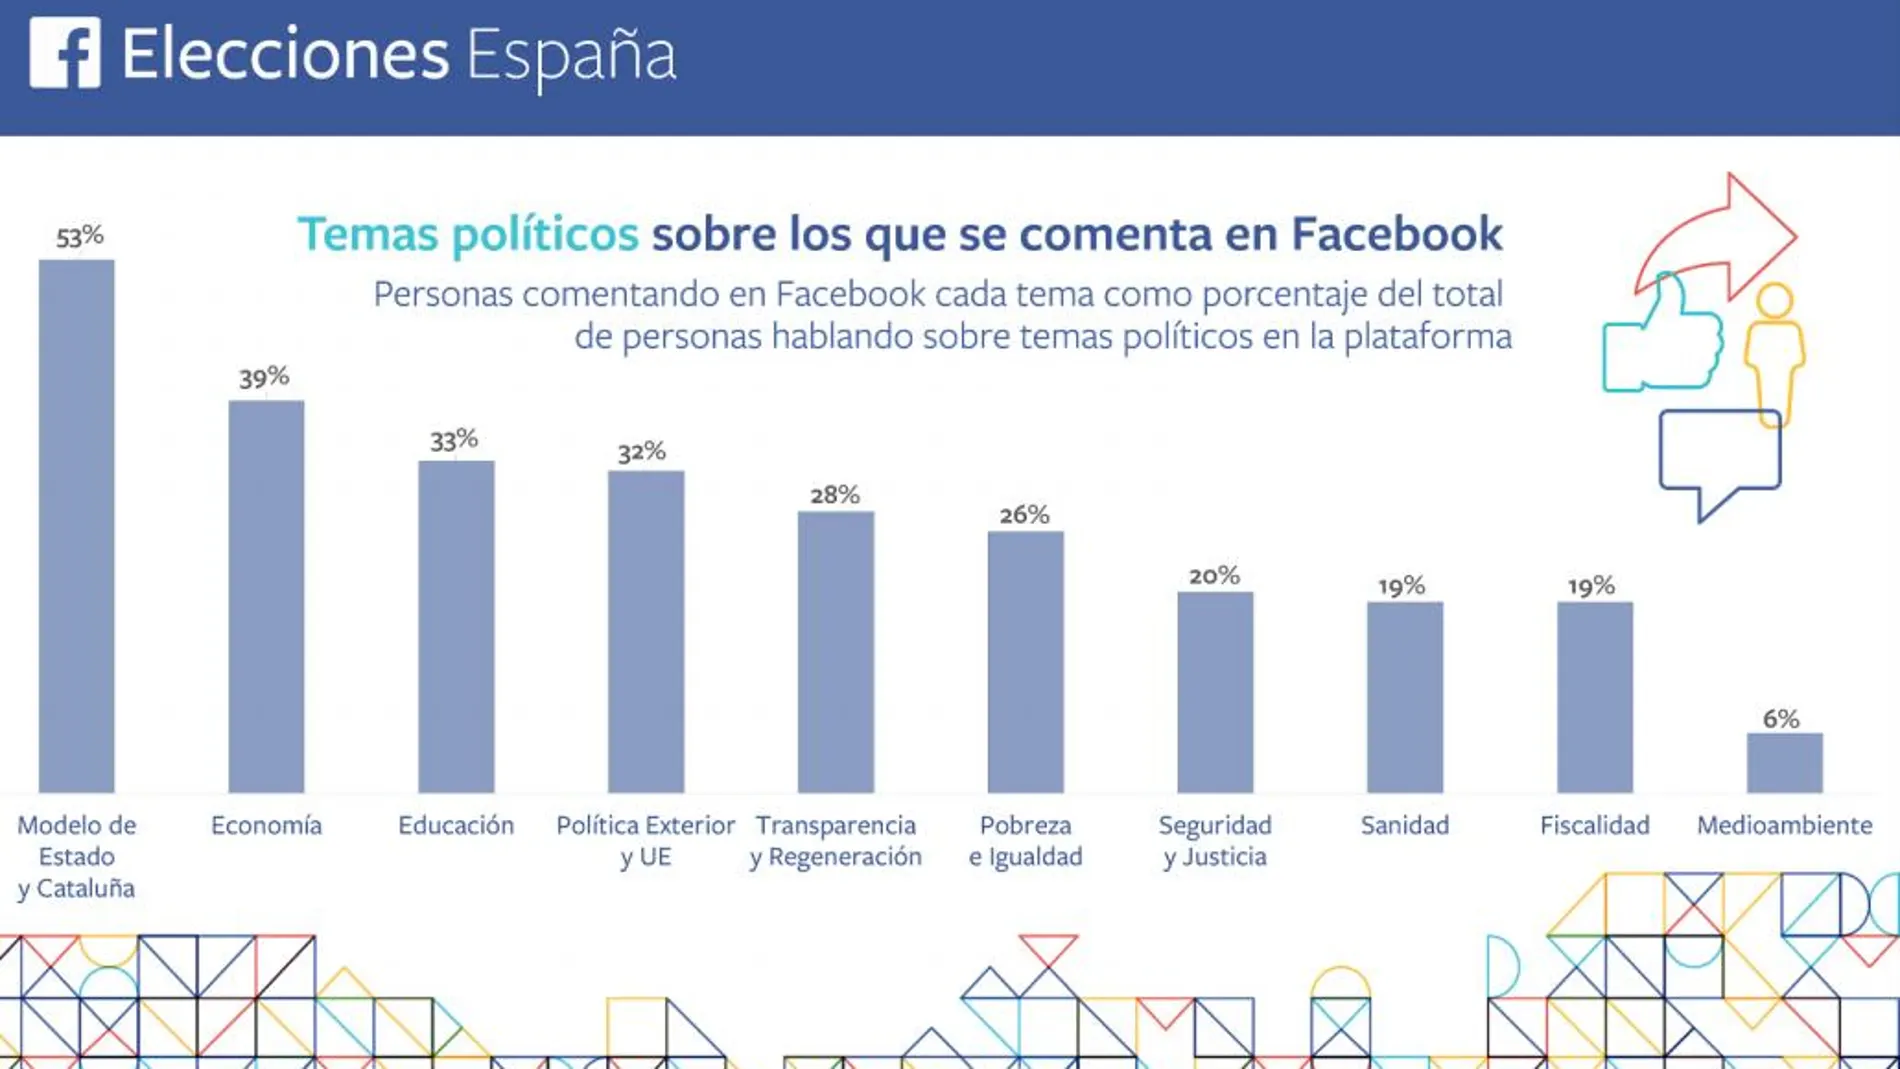 Cataluña y el modelo territorial capitalizan los comentarios políticos en Facebook